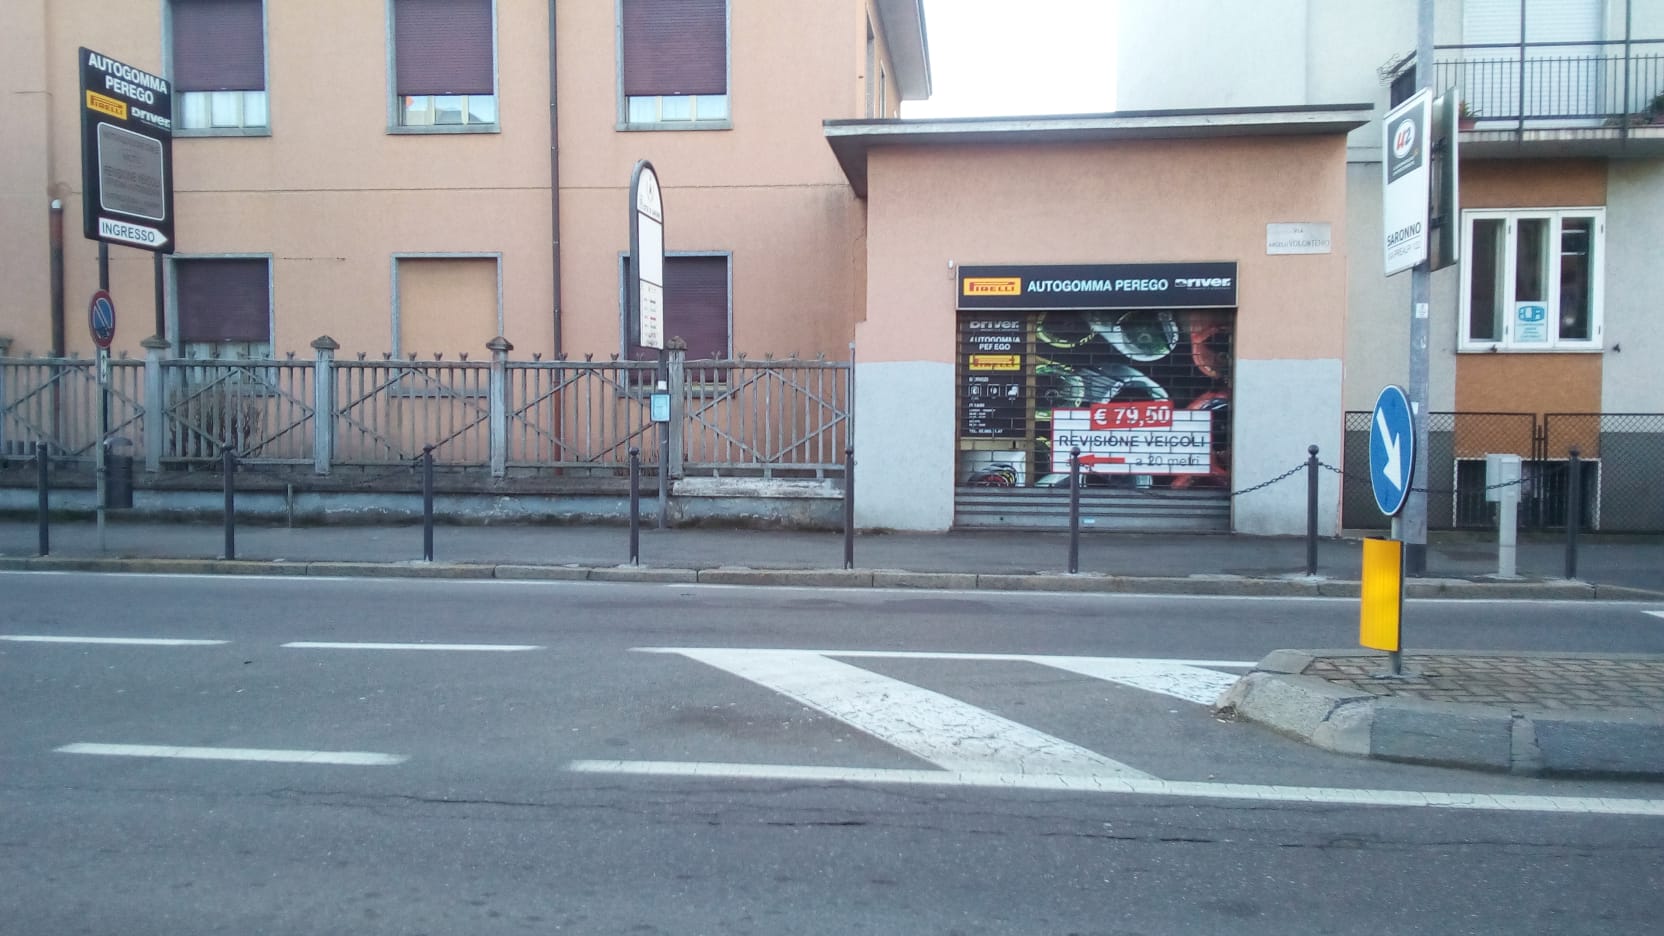 Saronno, torna accessibile la fermata del bus “incatenata” in via Volonterio